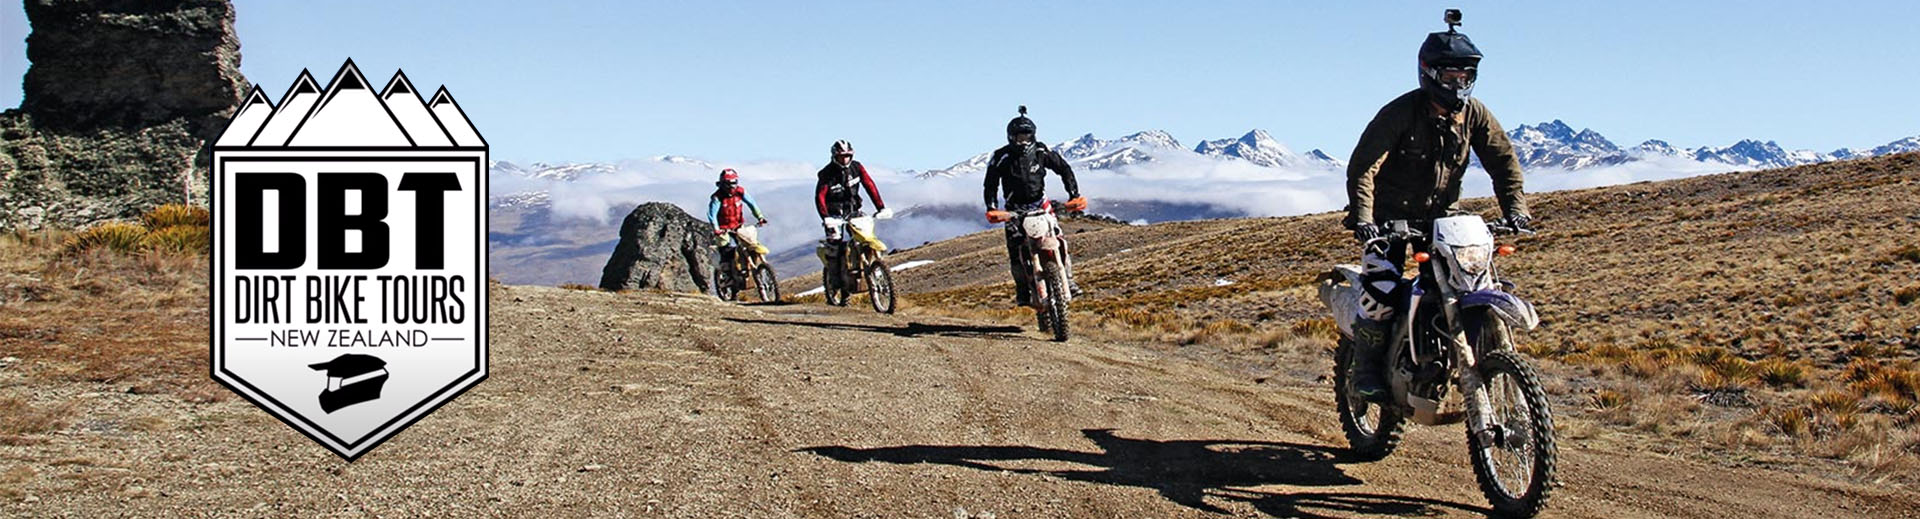 Dirt Bike Tours New Zealand